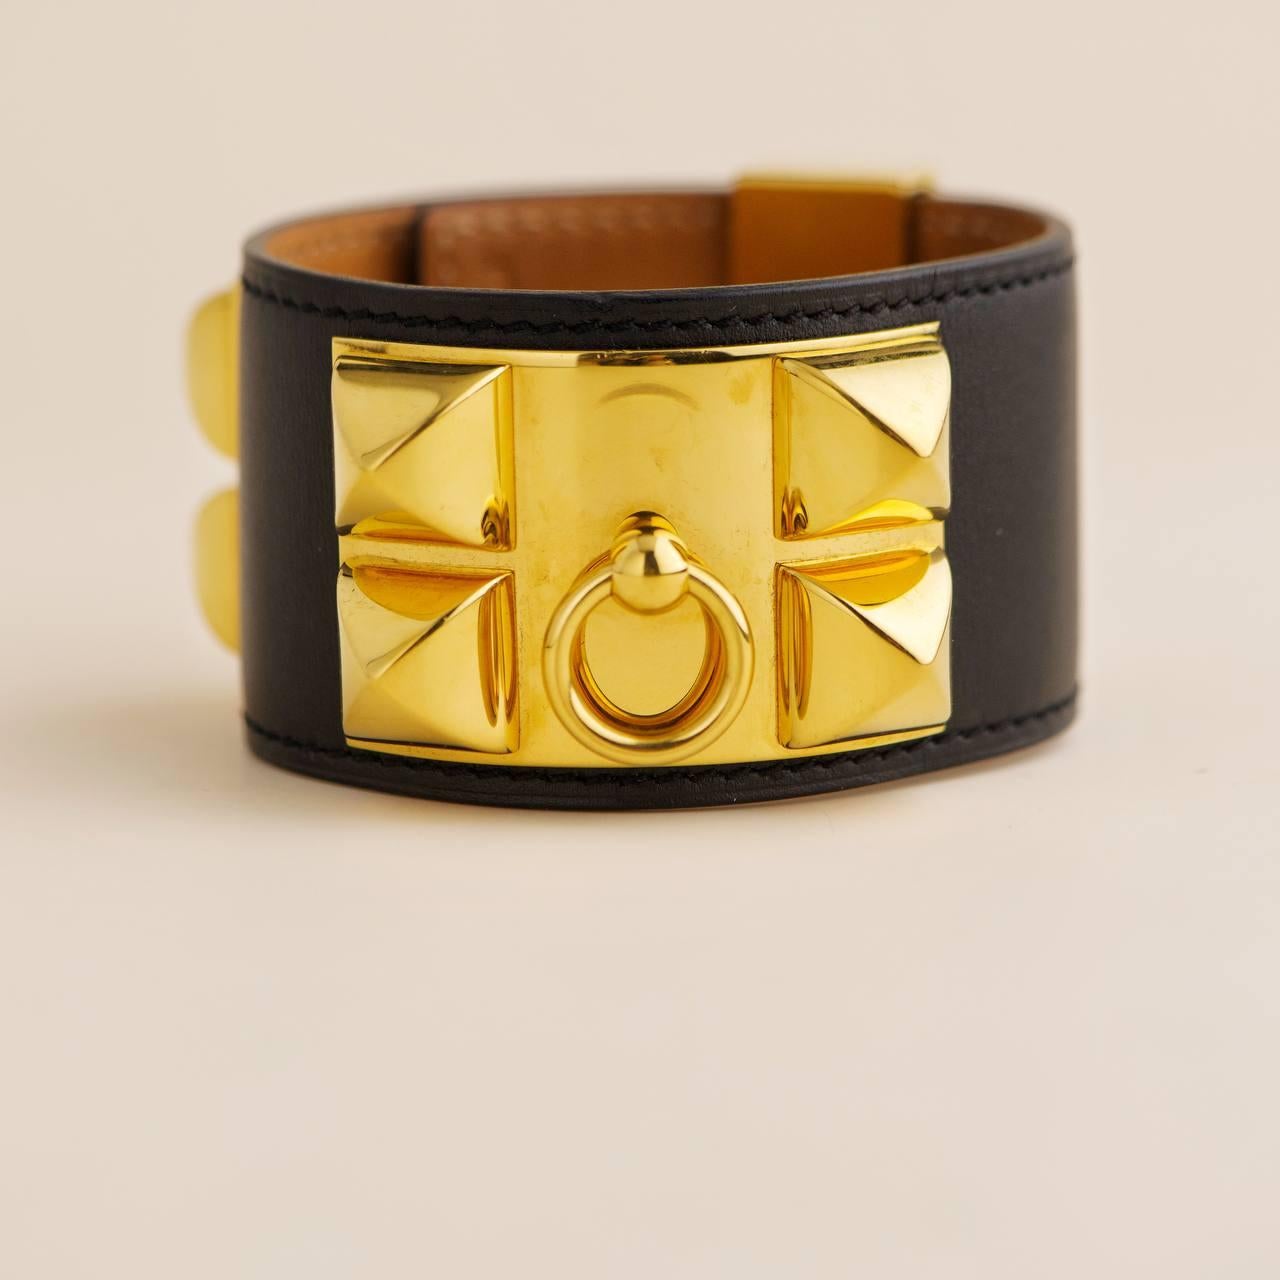 Hermès Collier De Chien Leather Golden Metal Bracelet In Excellent Condition For Sale In Banbury, GB